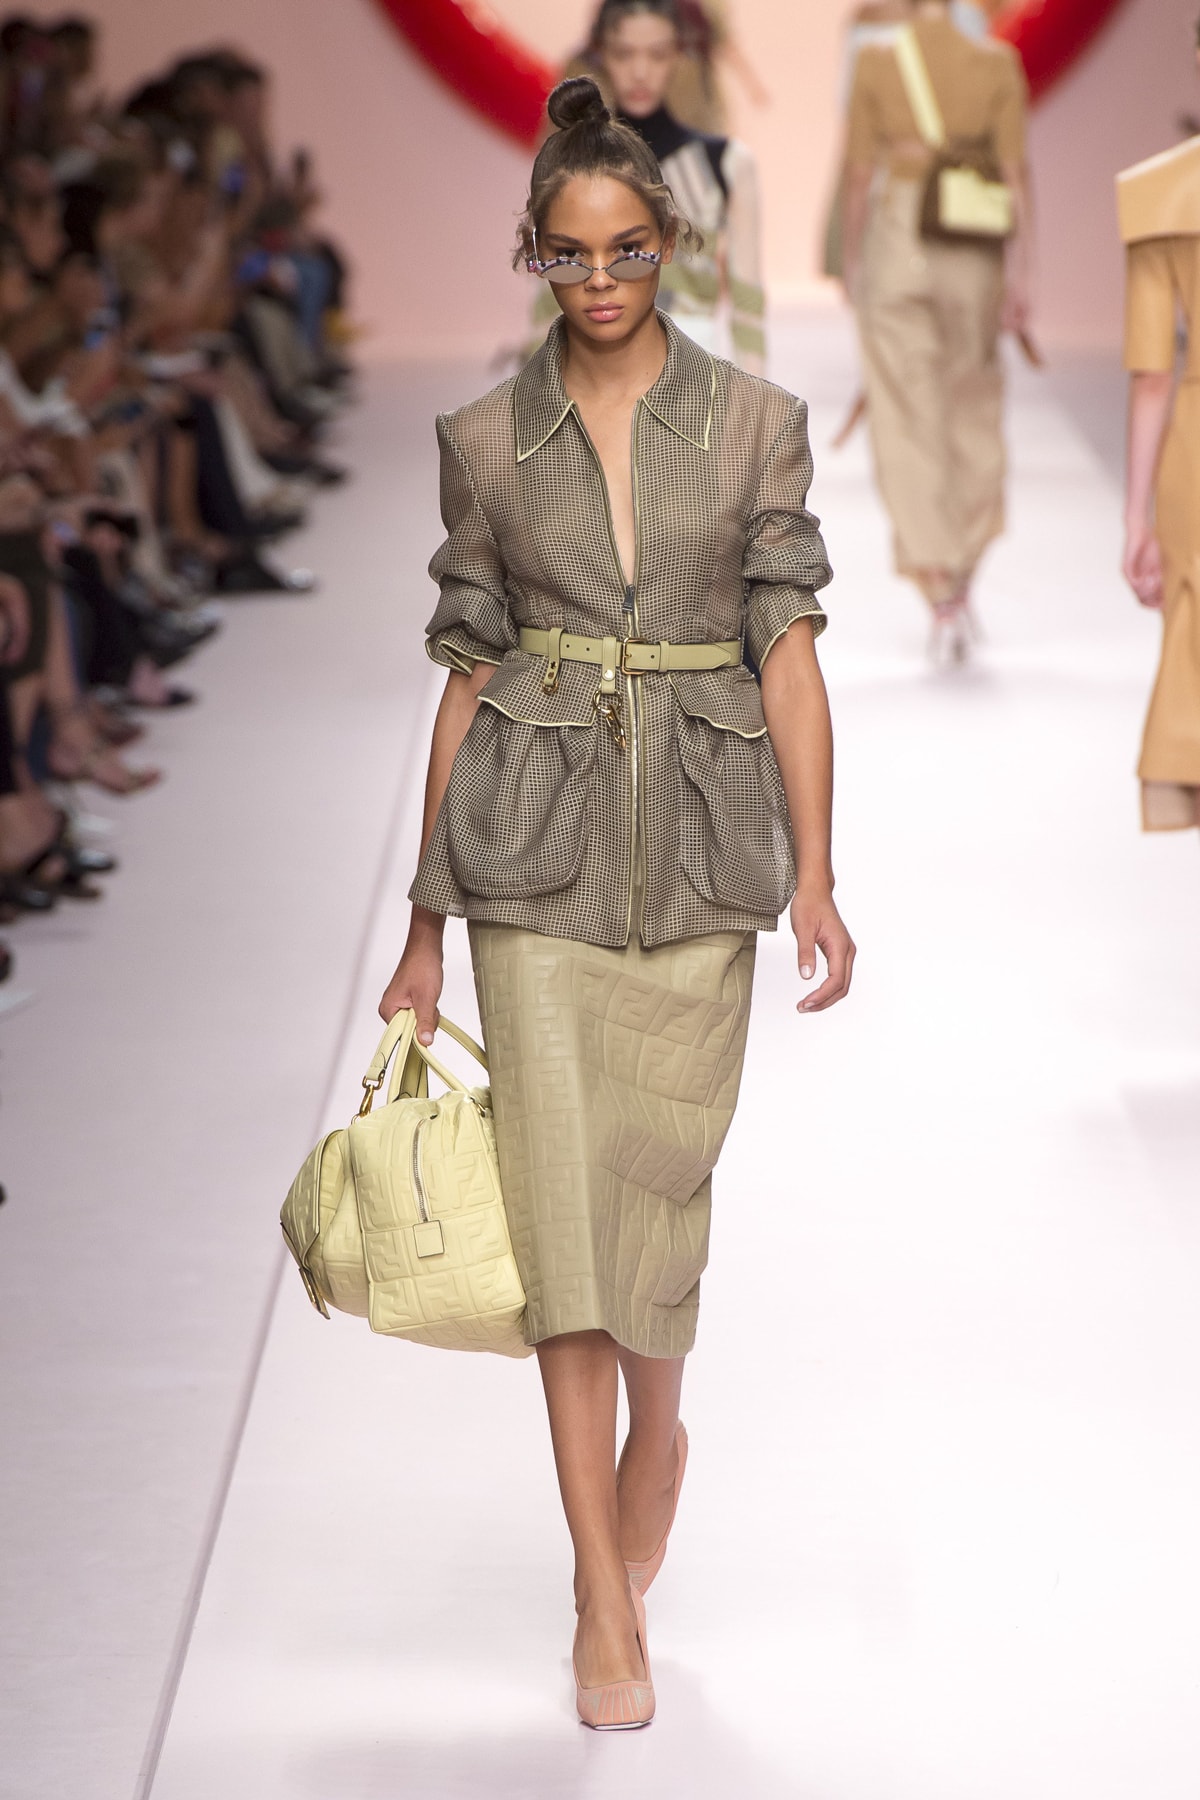 Fendi Karl Lagerfeld Spring Summer 2019 Milan Fashion Week Show Collection Jacket Tan Skirt Khaki Handbag Cream